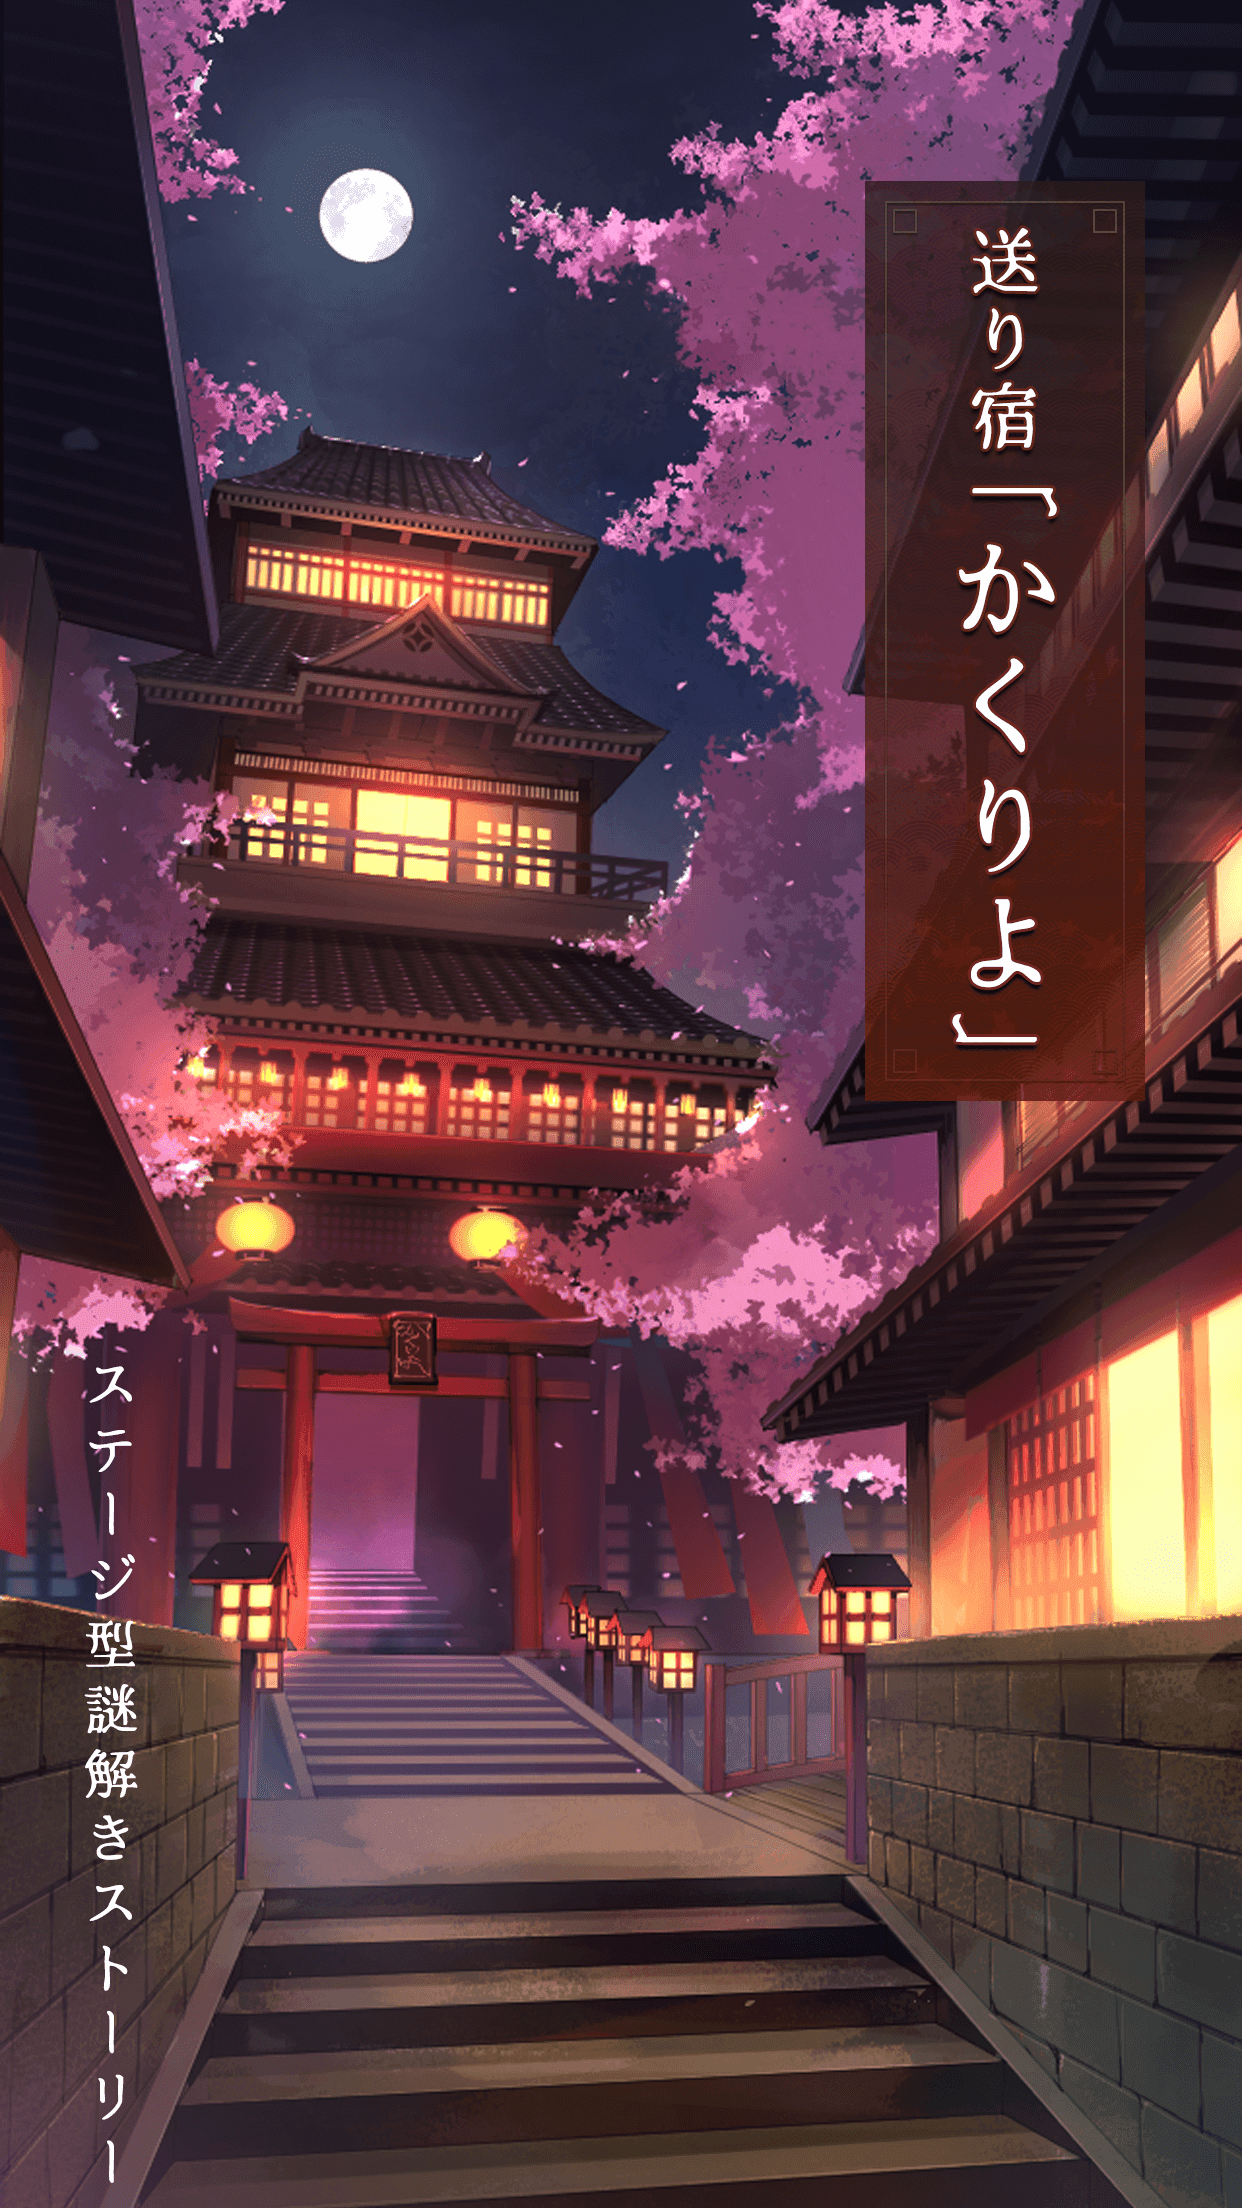 Screenshot 1 of Inn "Kakuriyo" Stage-type Mystery Solving Story ပေးပို့ခြင်း။ 1.6.0